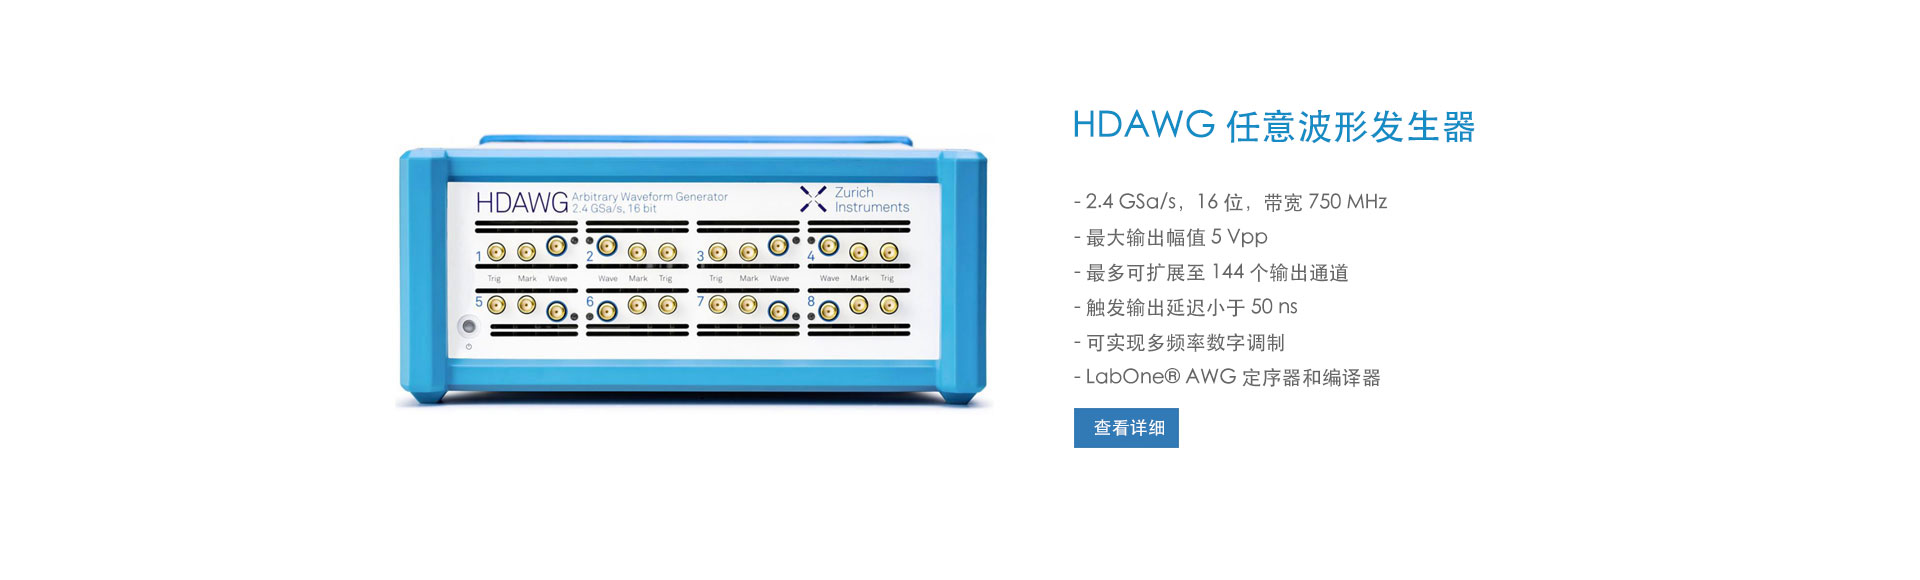 HDAWG 任意波形发生器